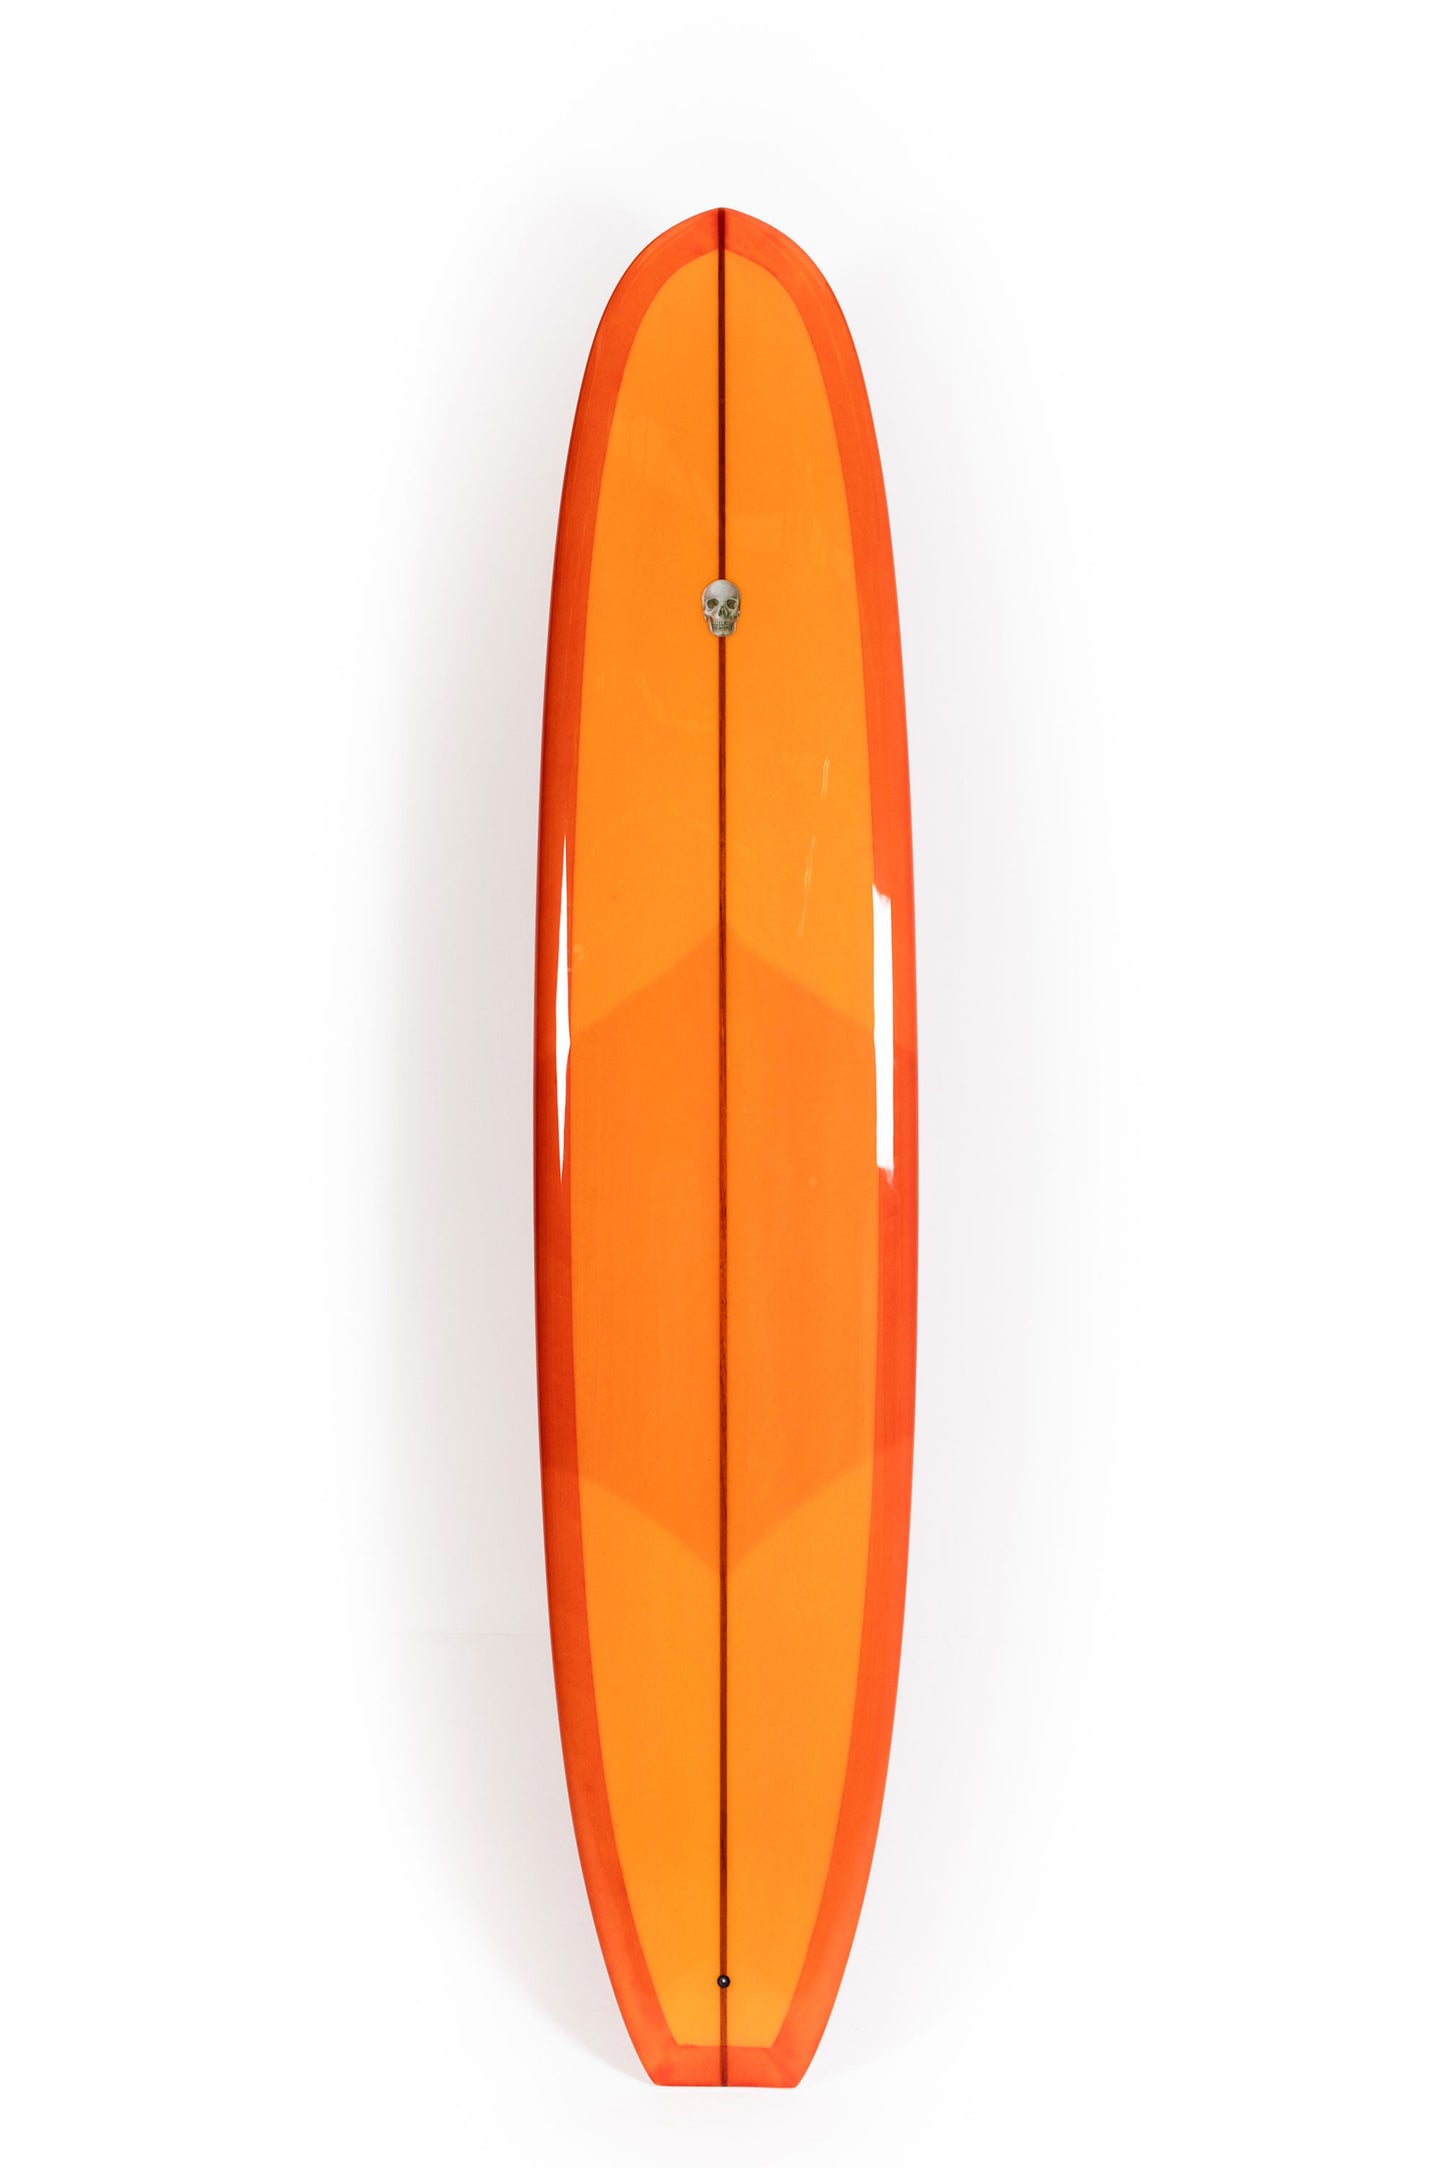 Pukas Surf Shop - Christenson Surfboards - BONNEVILLE - 9'0" x 22 1/2 x 2 7/8 - CX04689